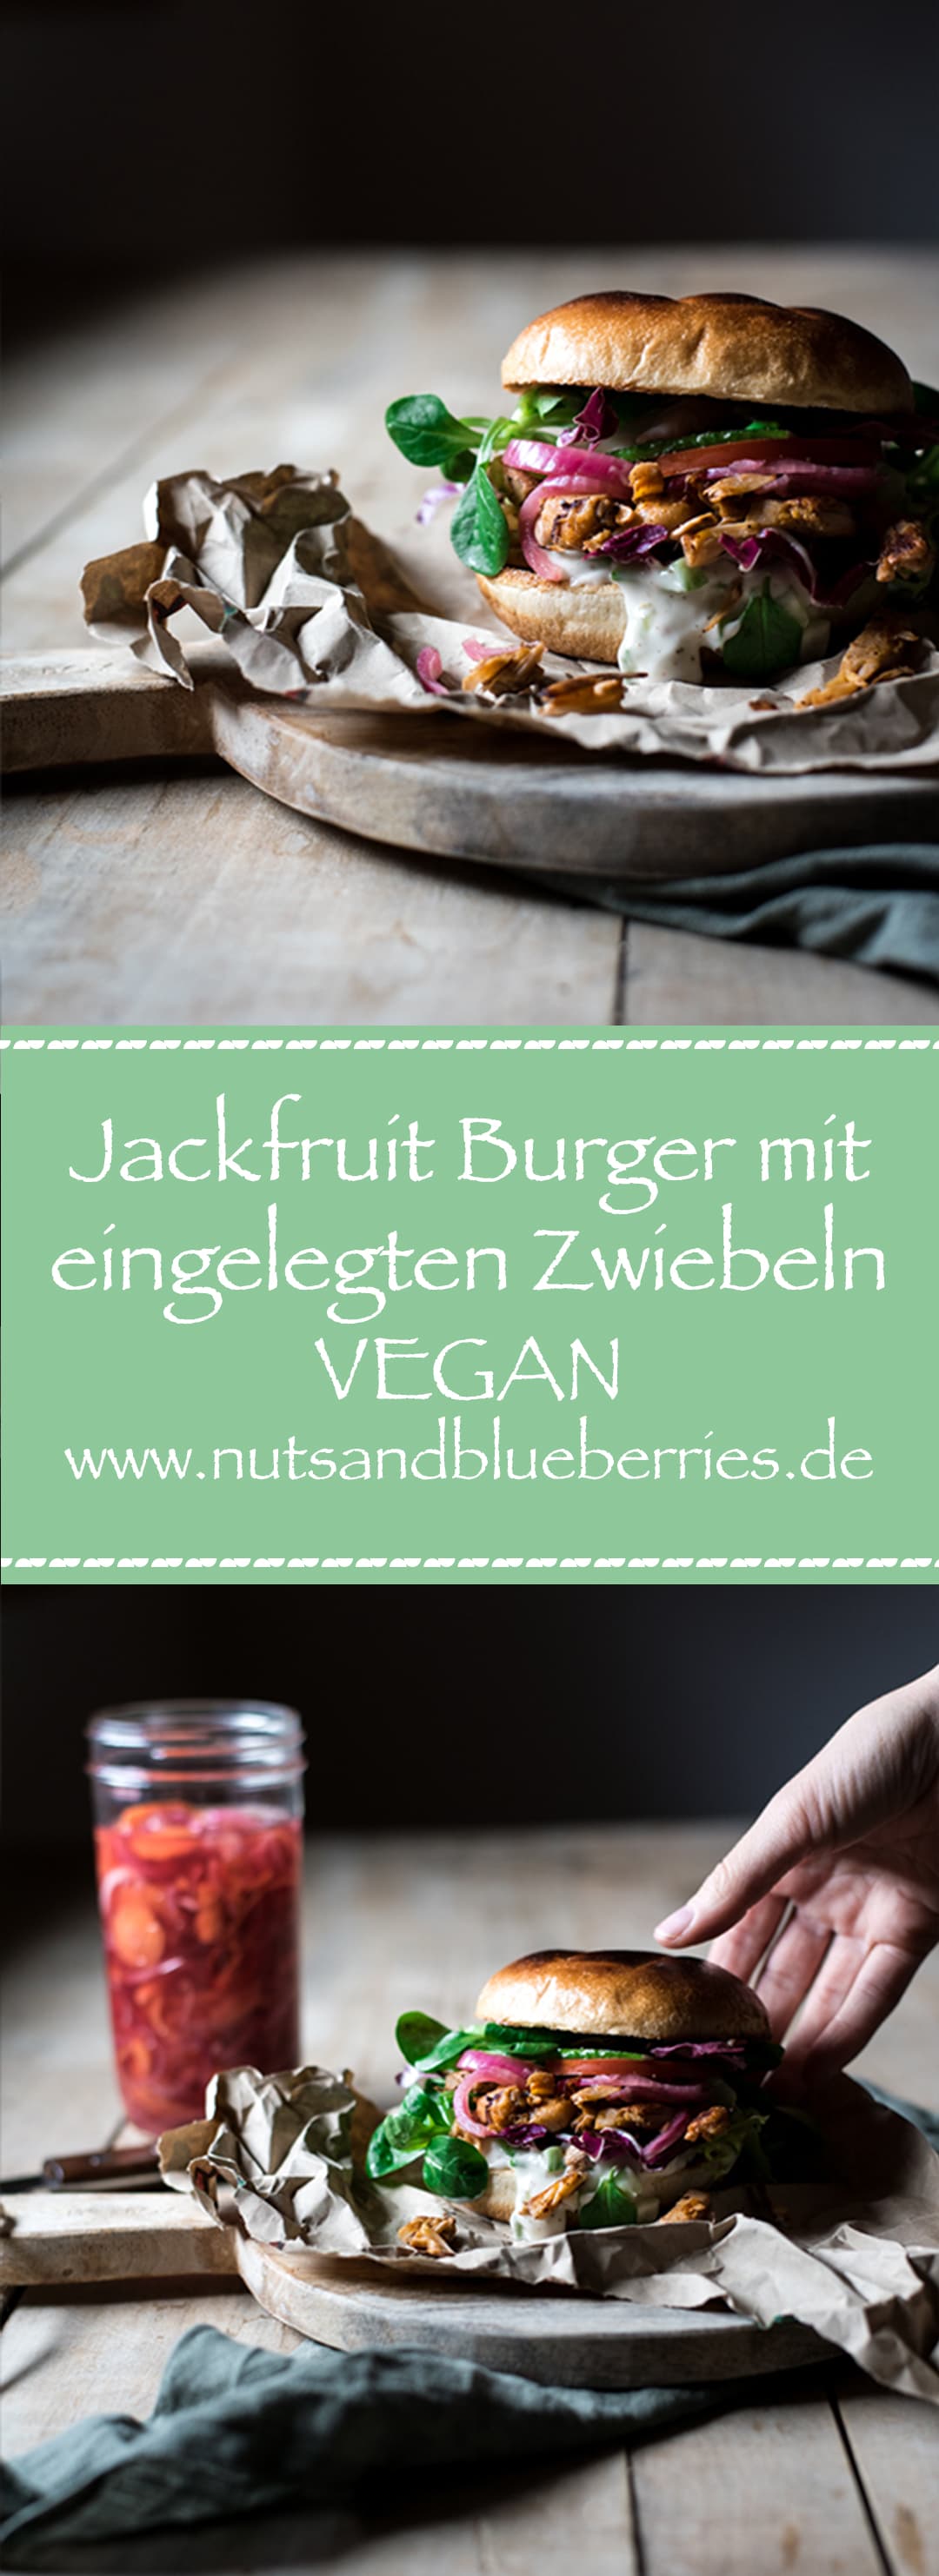 jackfruit burger